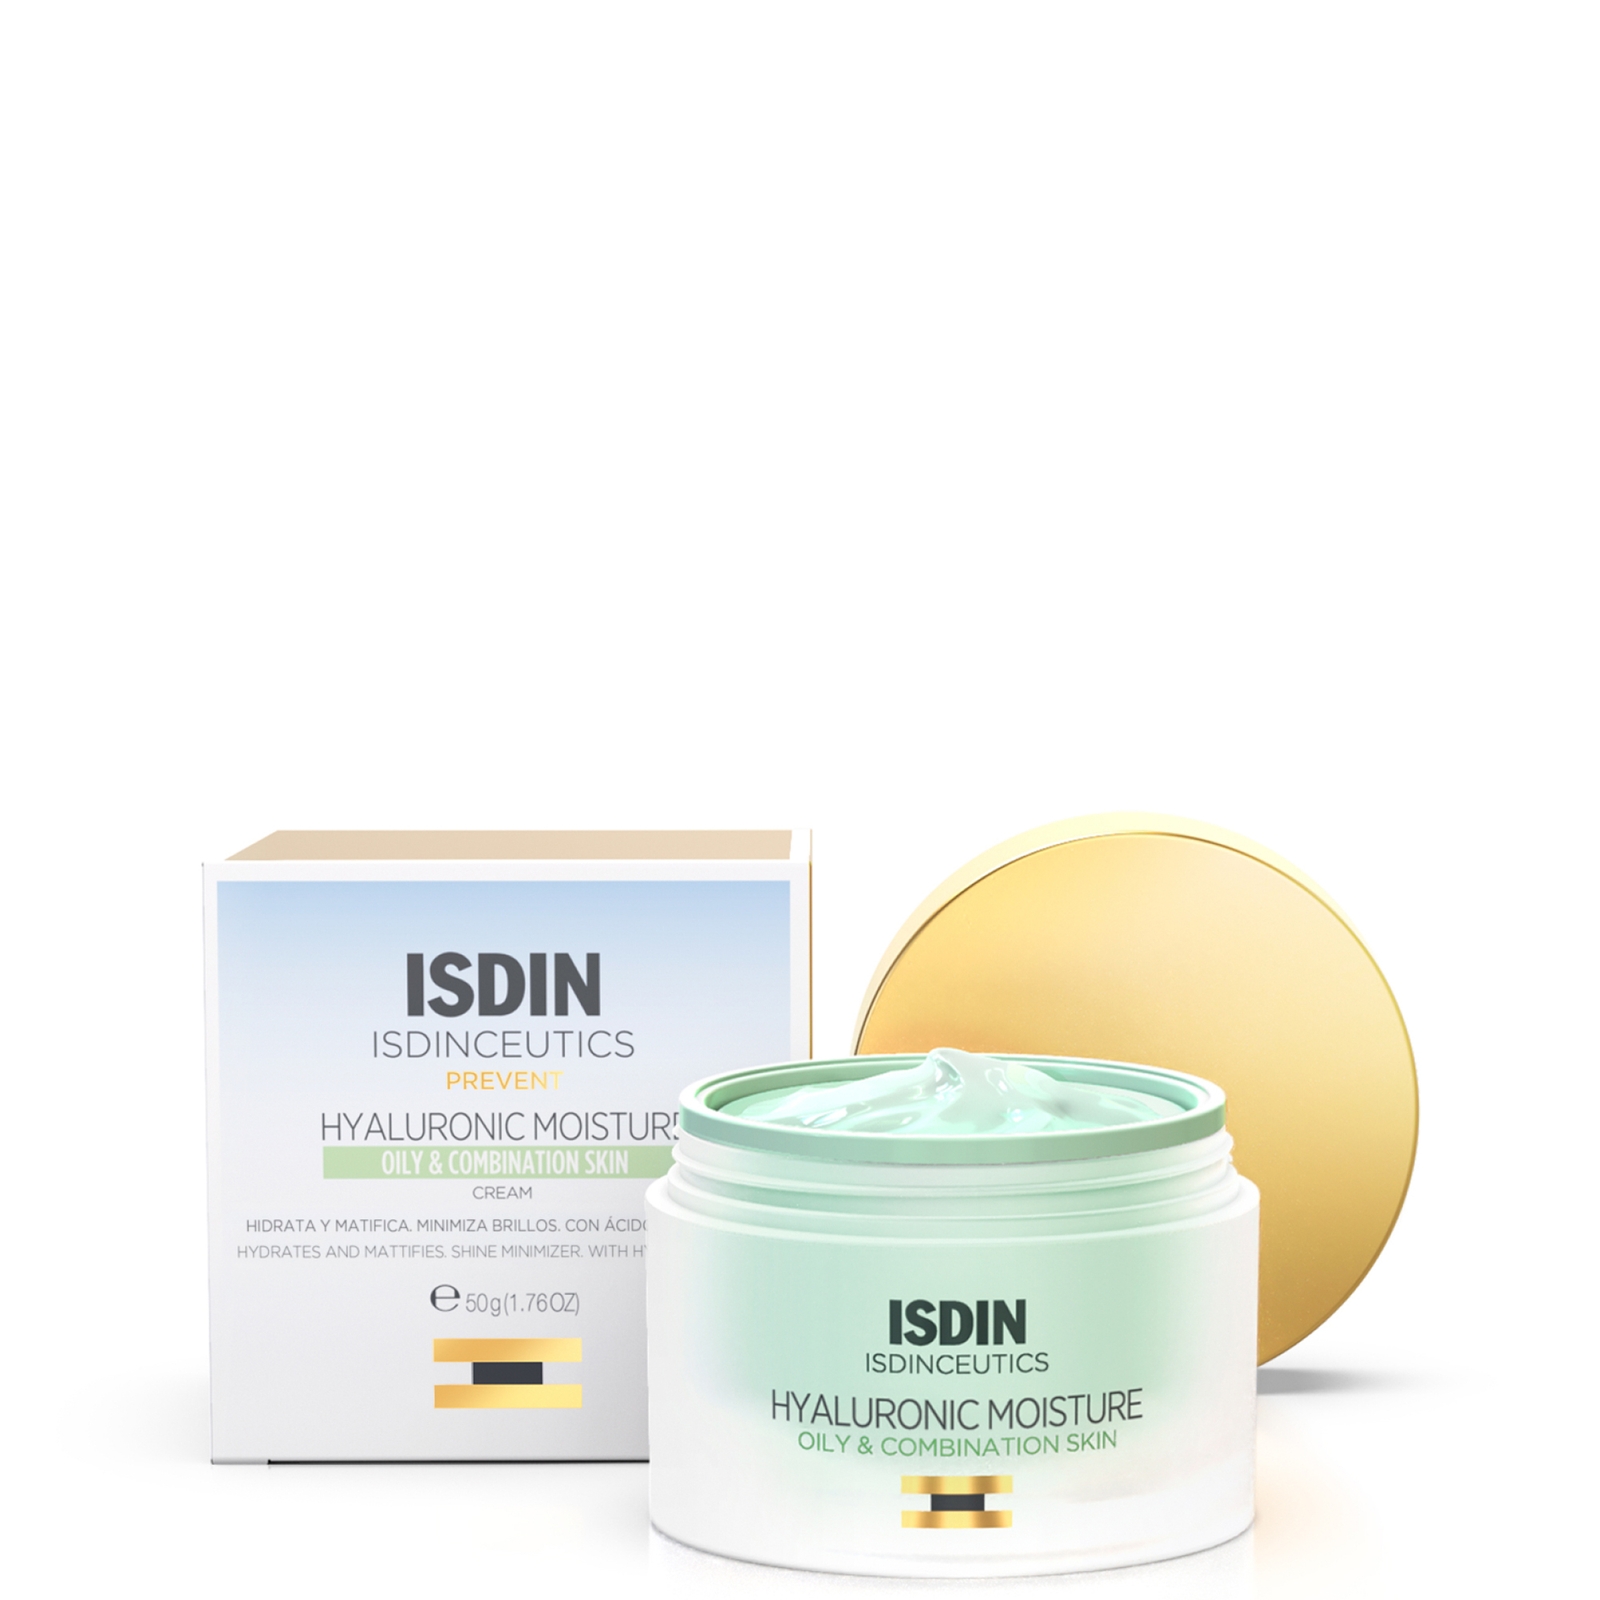 Isdin Ceutics Hyaluronic Moisture Hydrating Face Moisturiser For Oily Skin 50ml In White